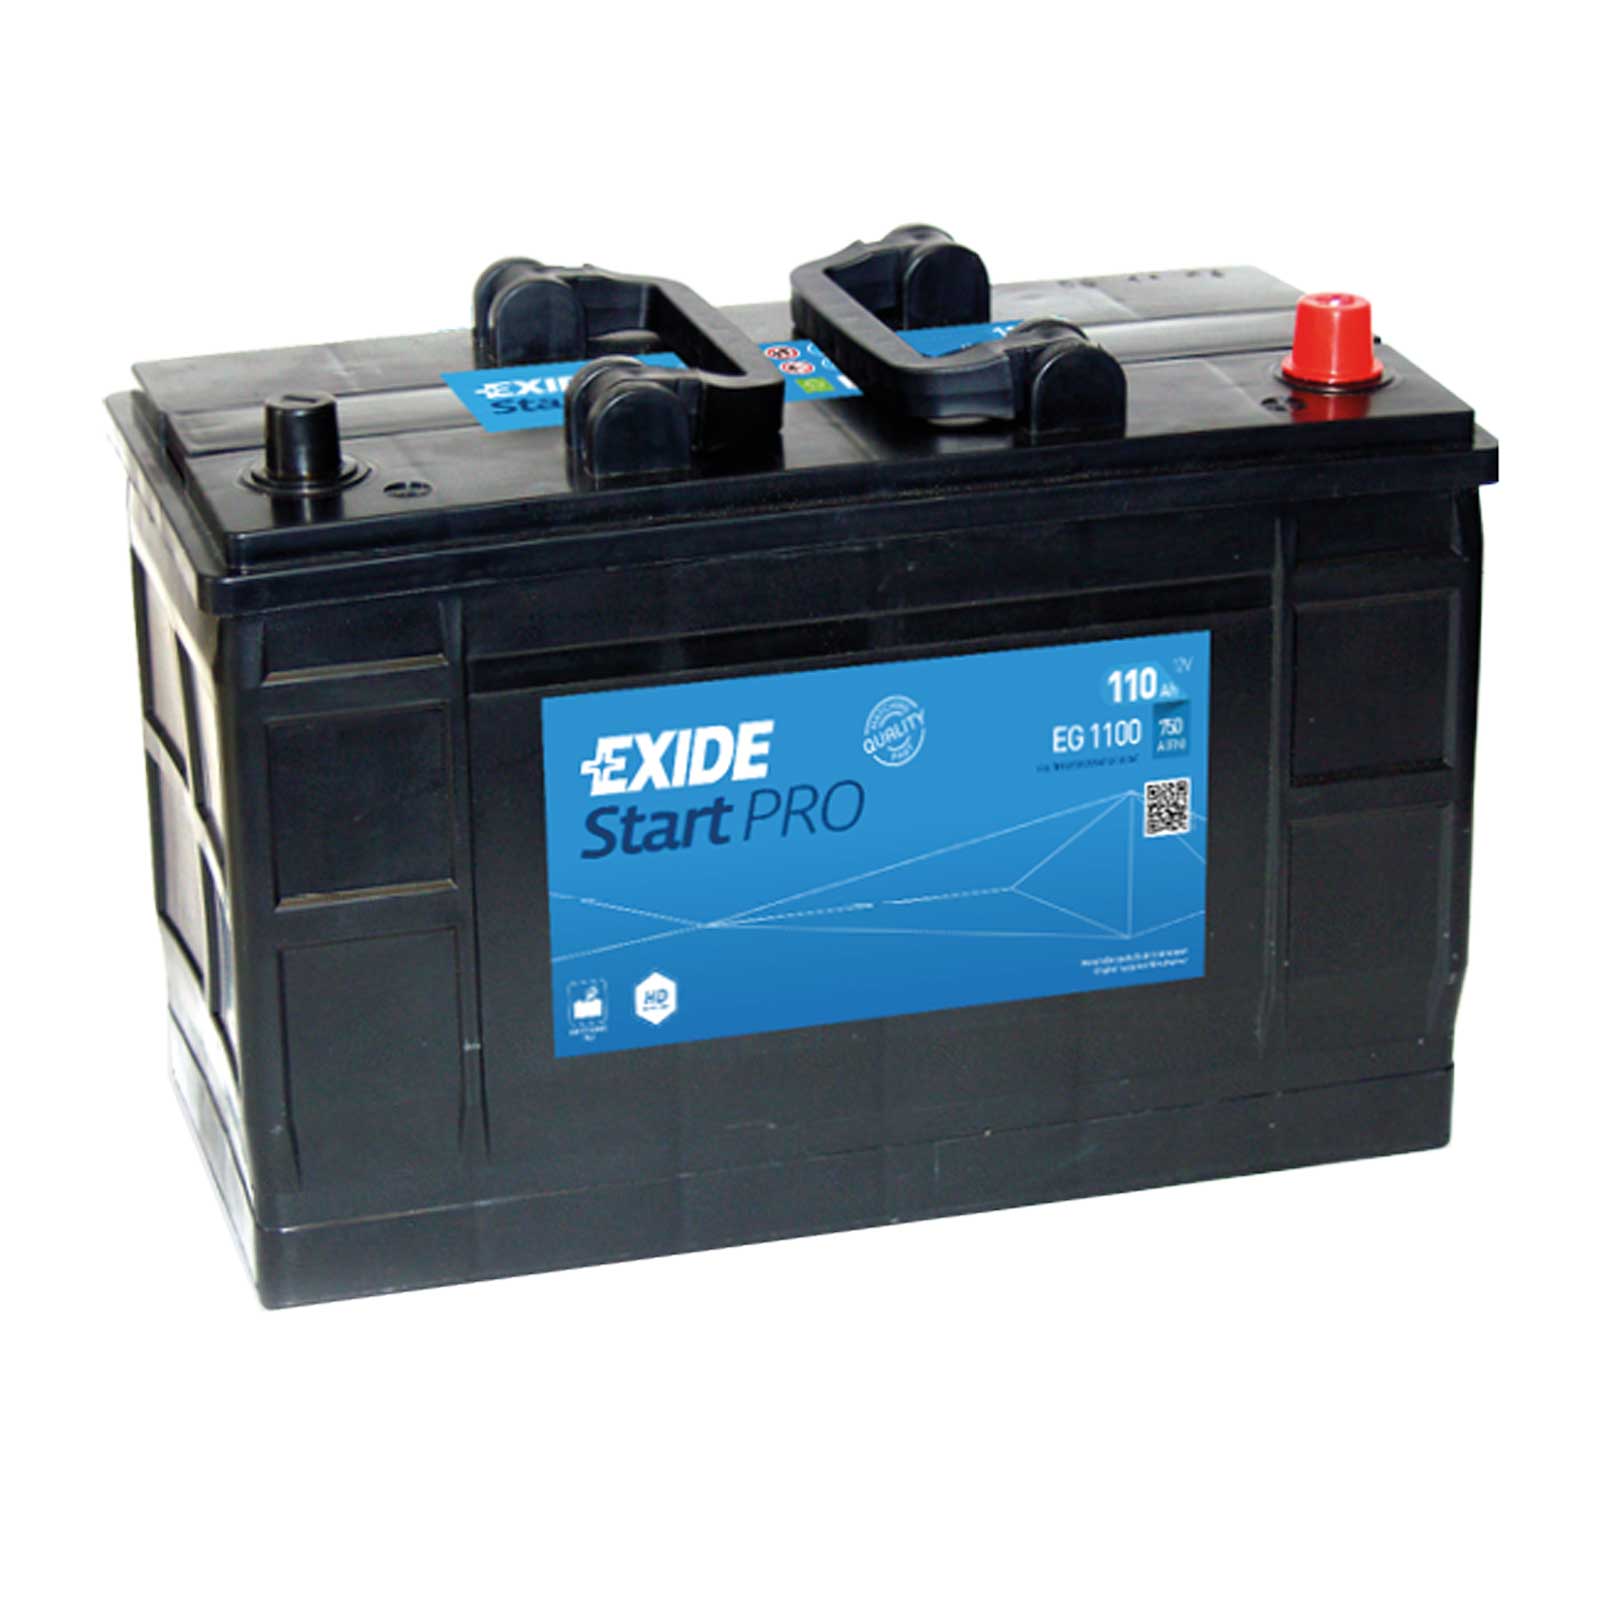 Exide EG1100 Start Pro 12V 110Ah 720A LKW Batterie